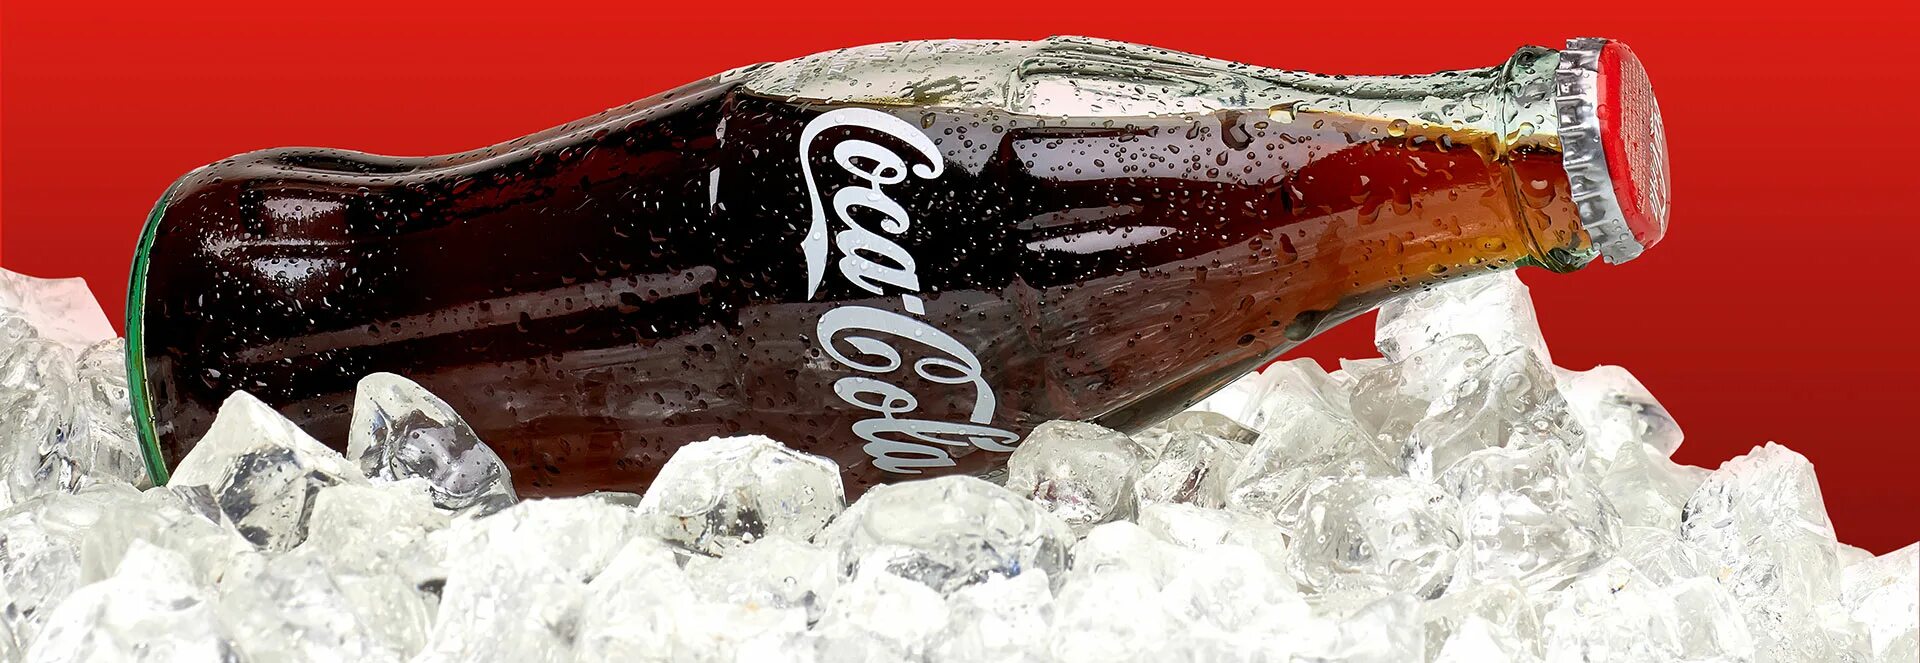 Камеди колу пьете. Кола бутылка. Кола в стеклянной бутылке. Coca Cola бутылка. Coca Cola бутылка реклама.